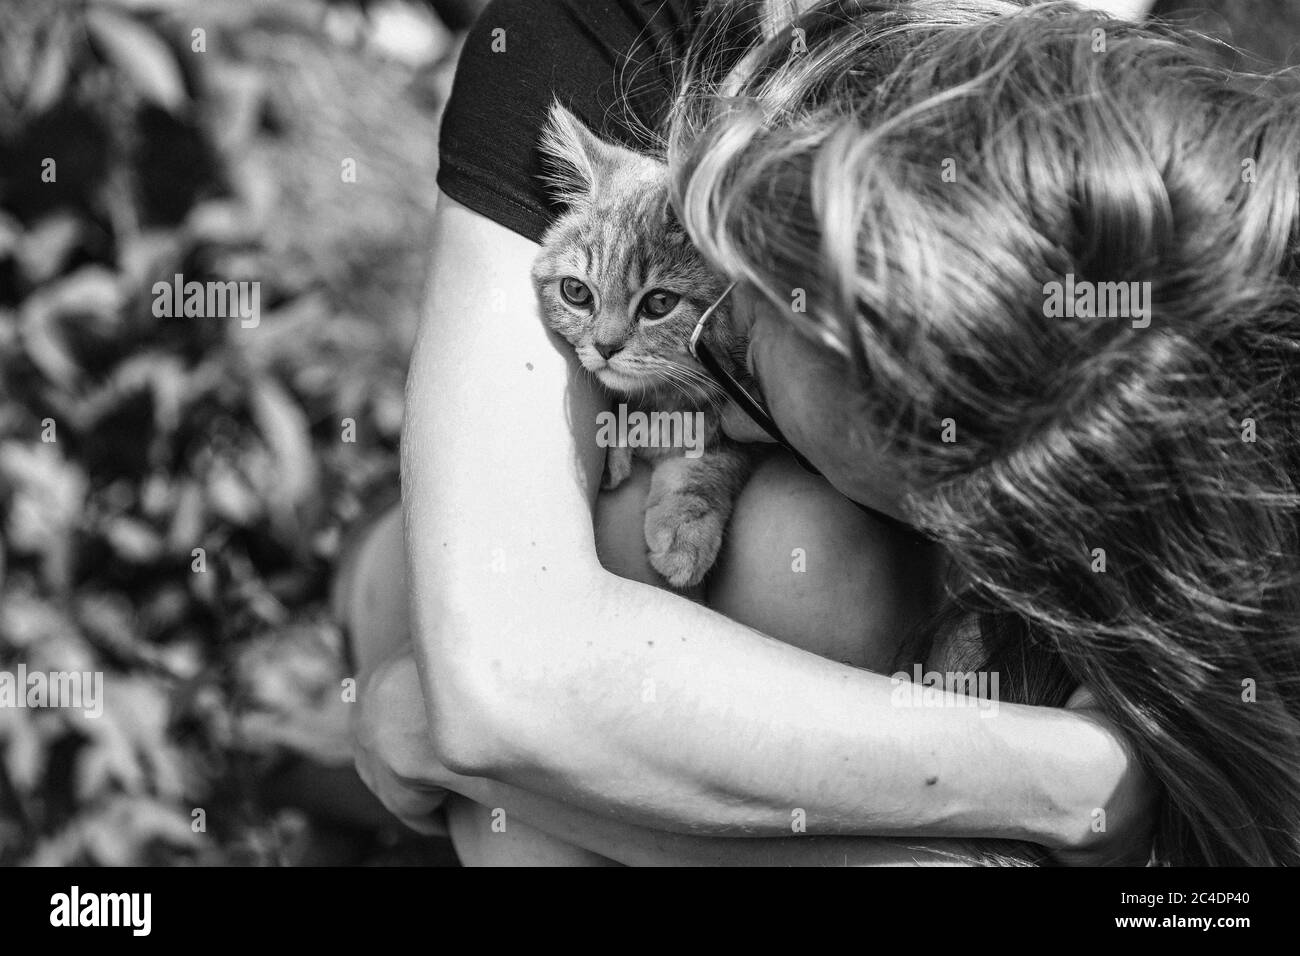 Jeune femme qui embrasse un chaton de la race Scottish Straight. Photo en noir et blanc à l'extérieur. Photo de haute qualité Banque D'Images